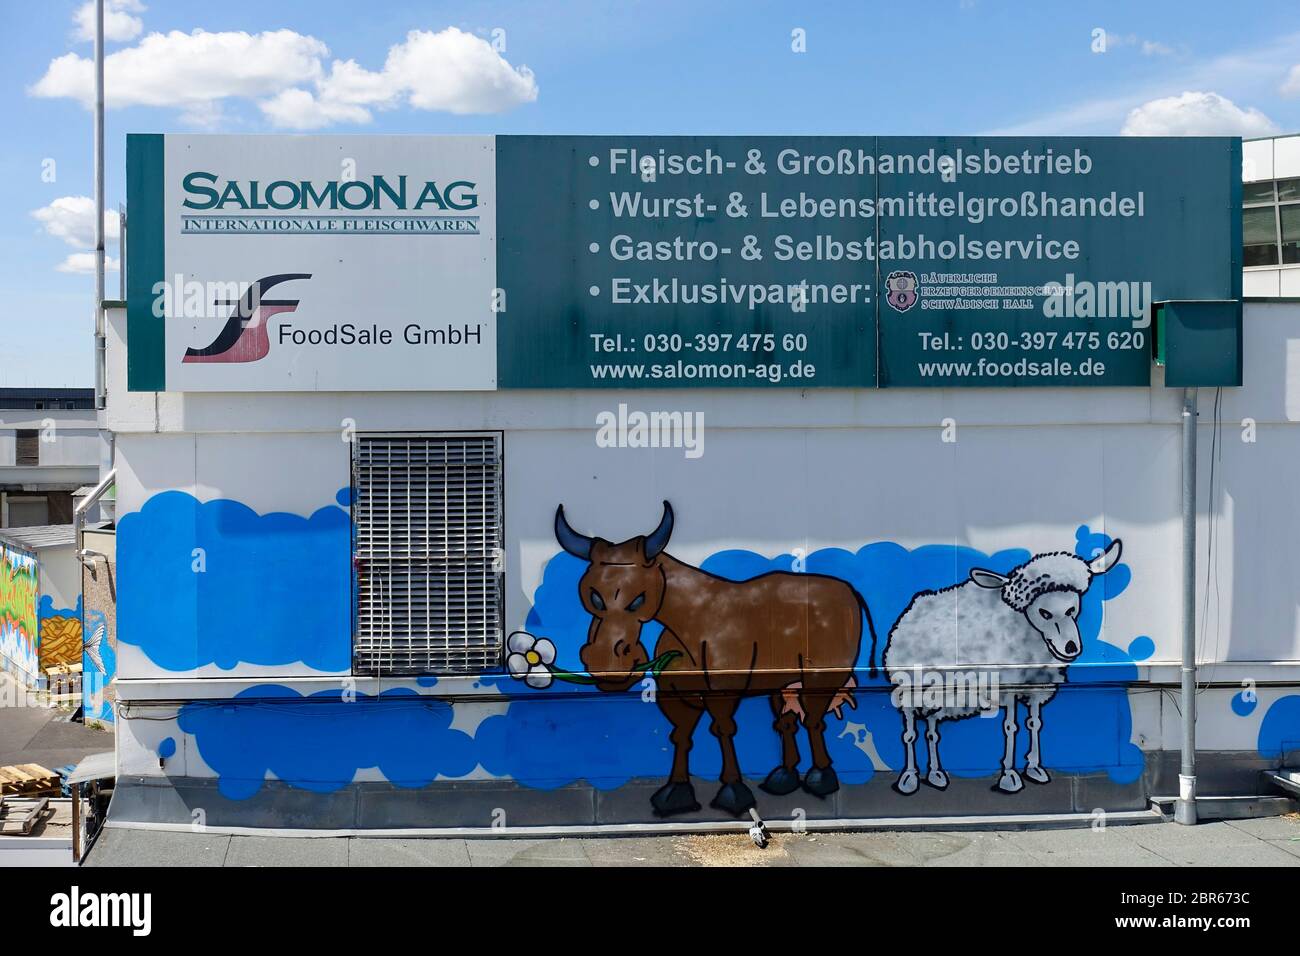 Salomon AG in Berlin Stock Photo - Alamy